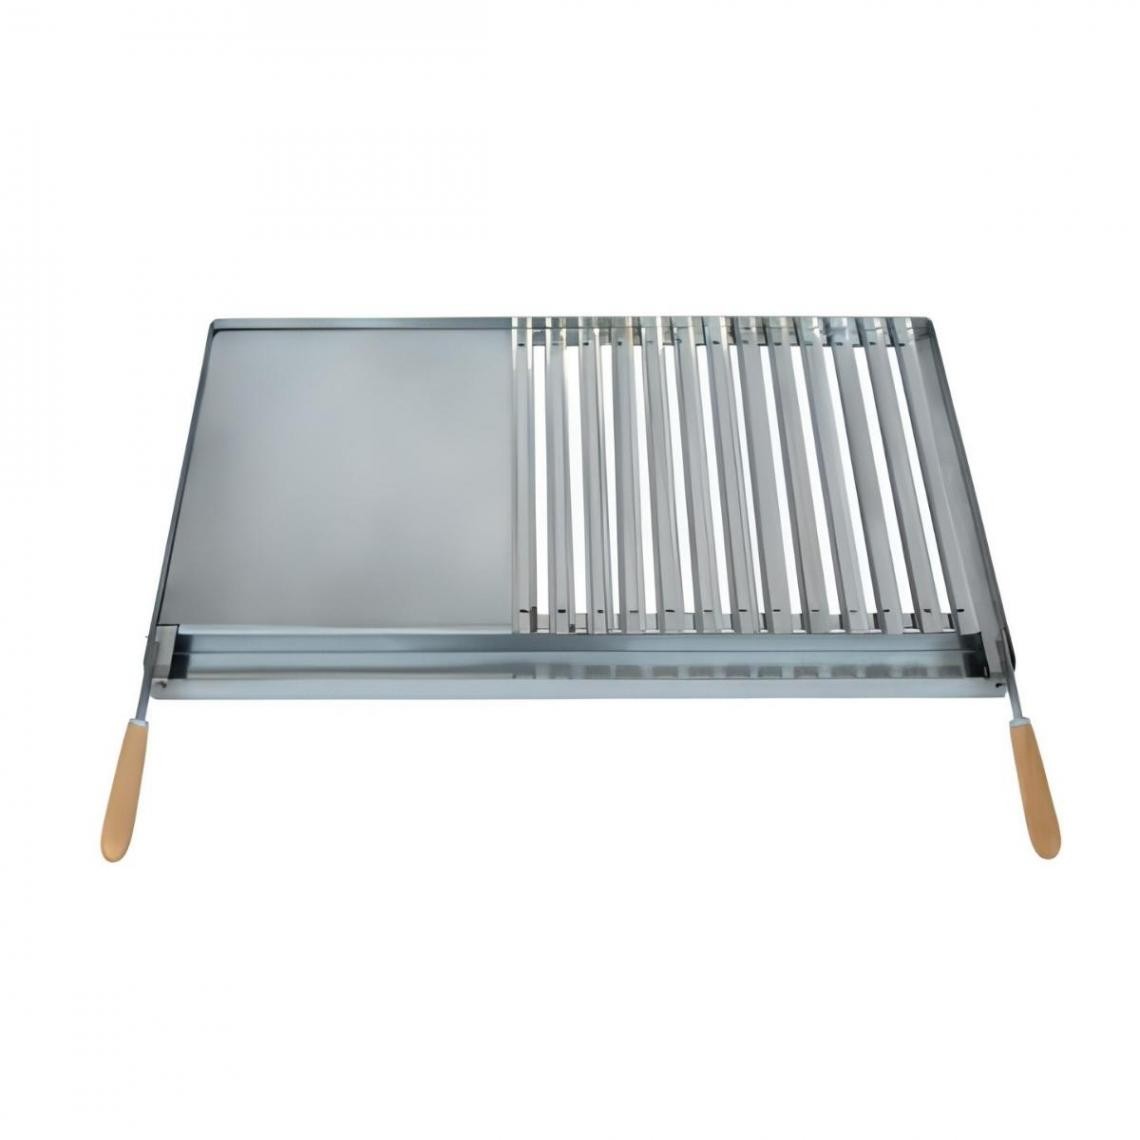 Visiodirect - Grille/Planche avec récupérateur de graisse en Inox coloris Gris - 57 x 43 cm - Accessoires barbecue